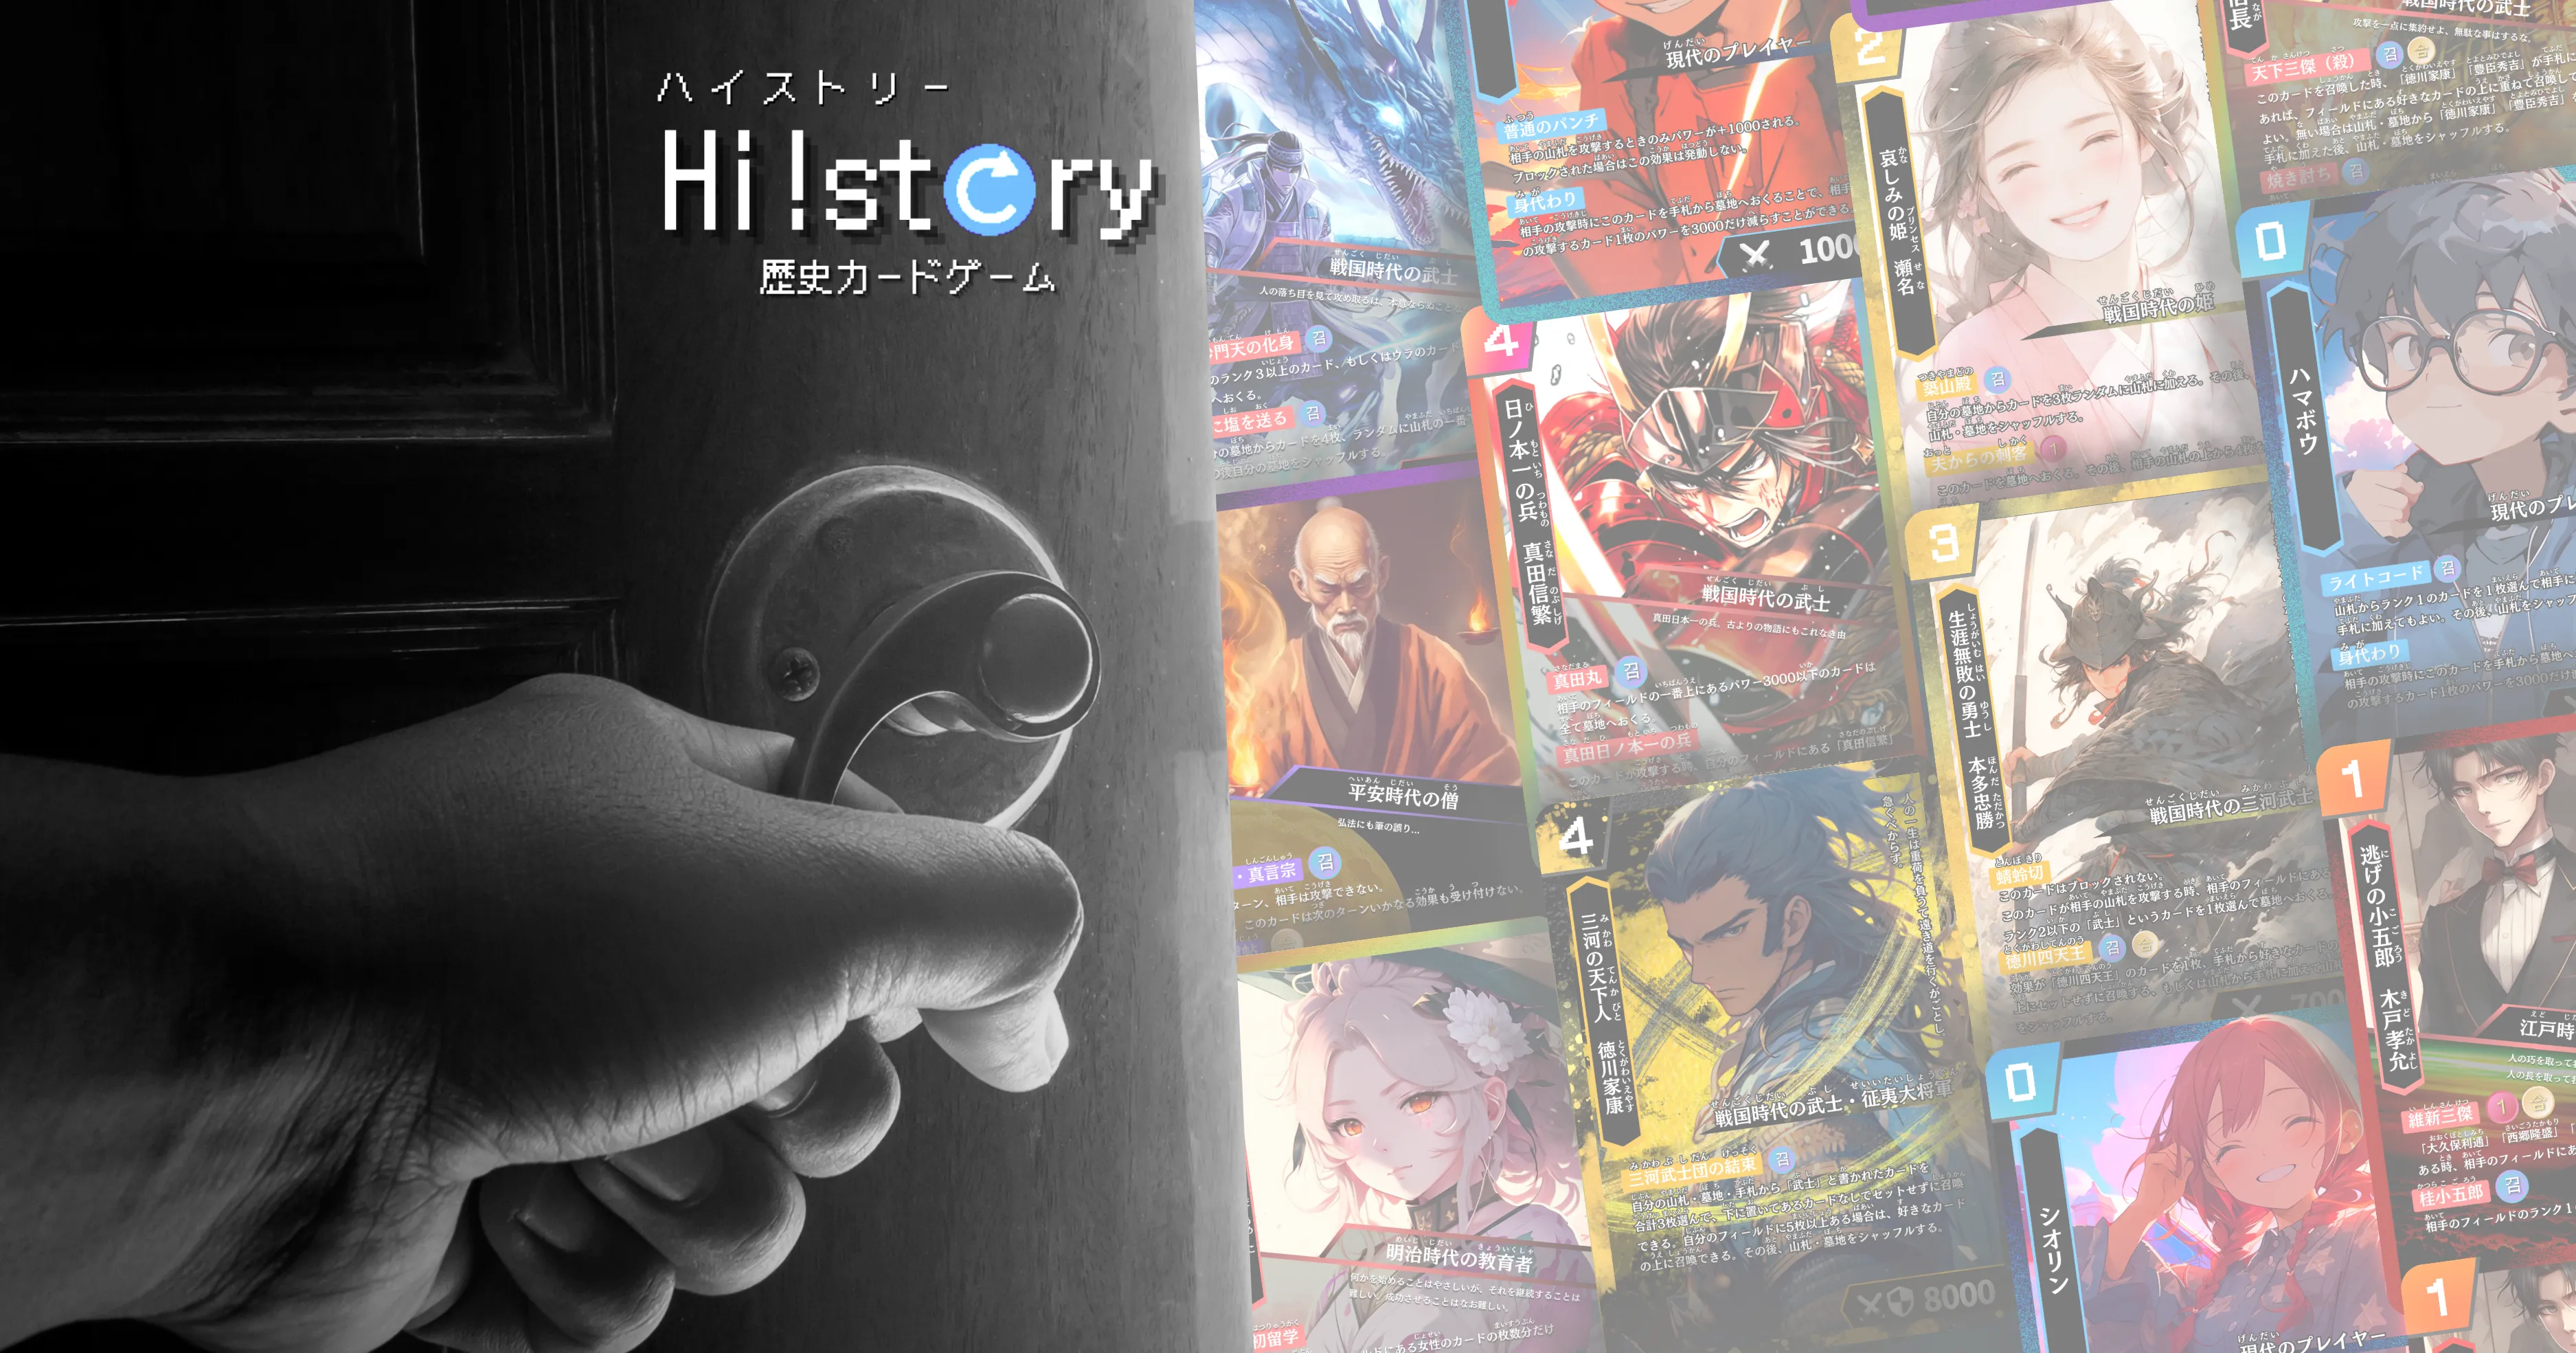 株式会社Highstoおよび歴史トレーディングカードゲームHi!story（ハイスト）のニュース「公式HPリニューアルのおしらせ」のサムネイル